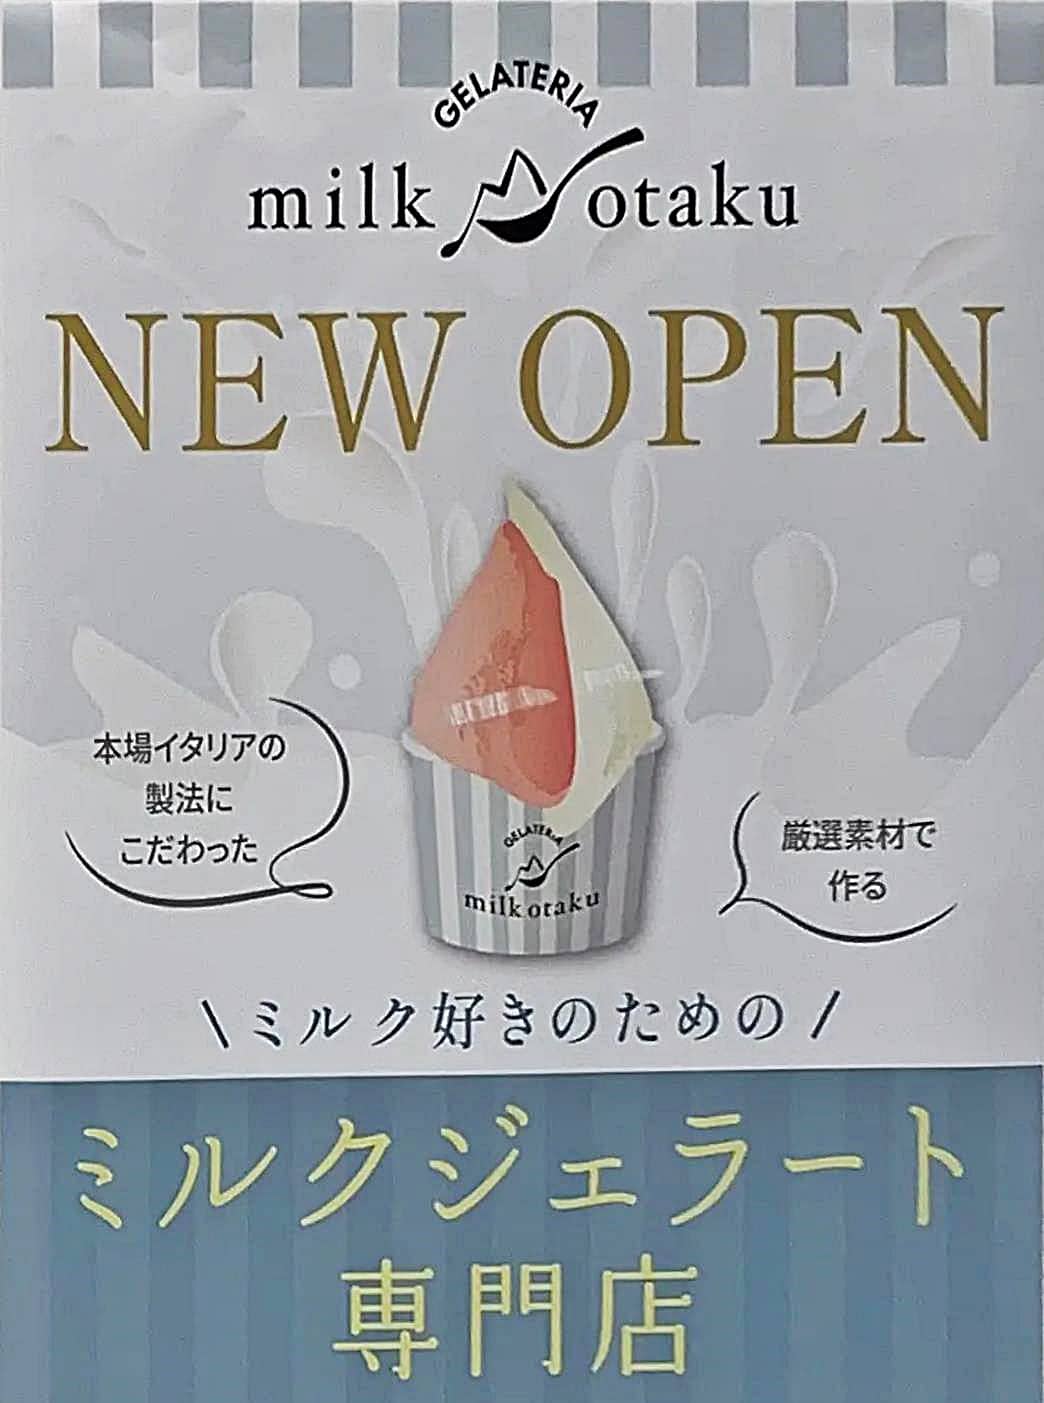 milkotaku チラシ